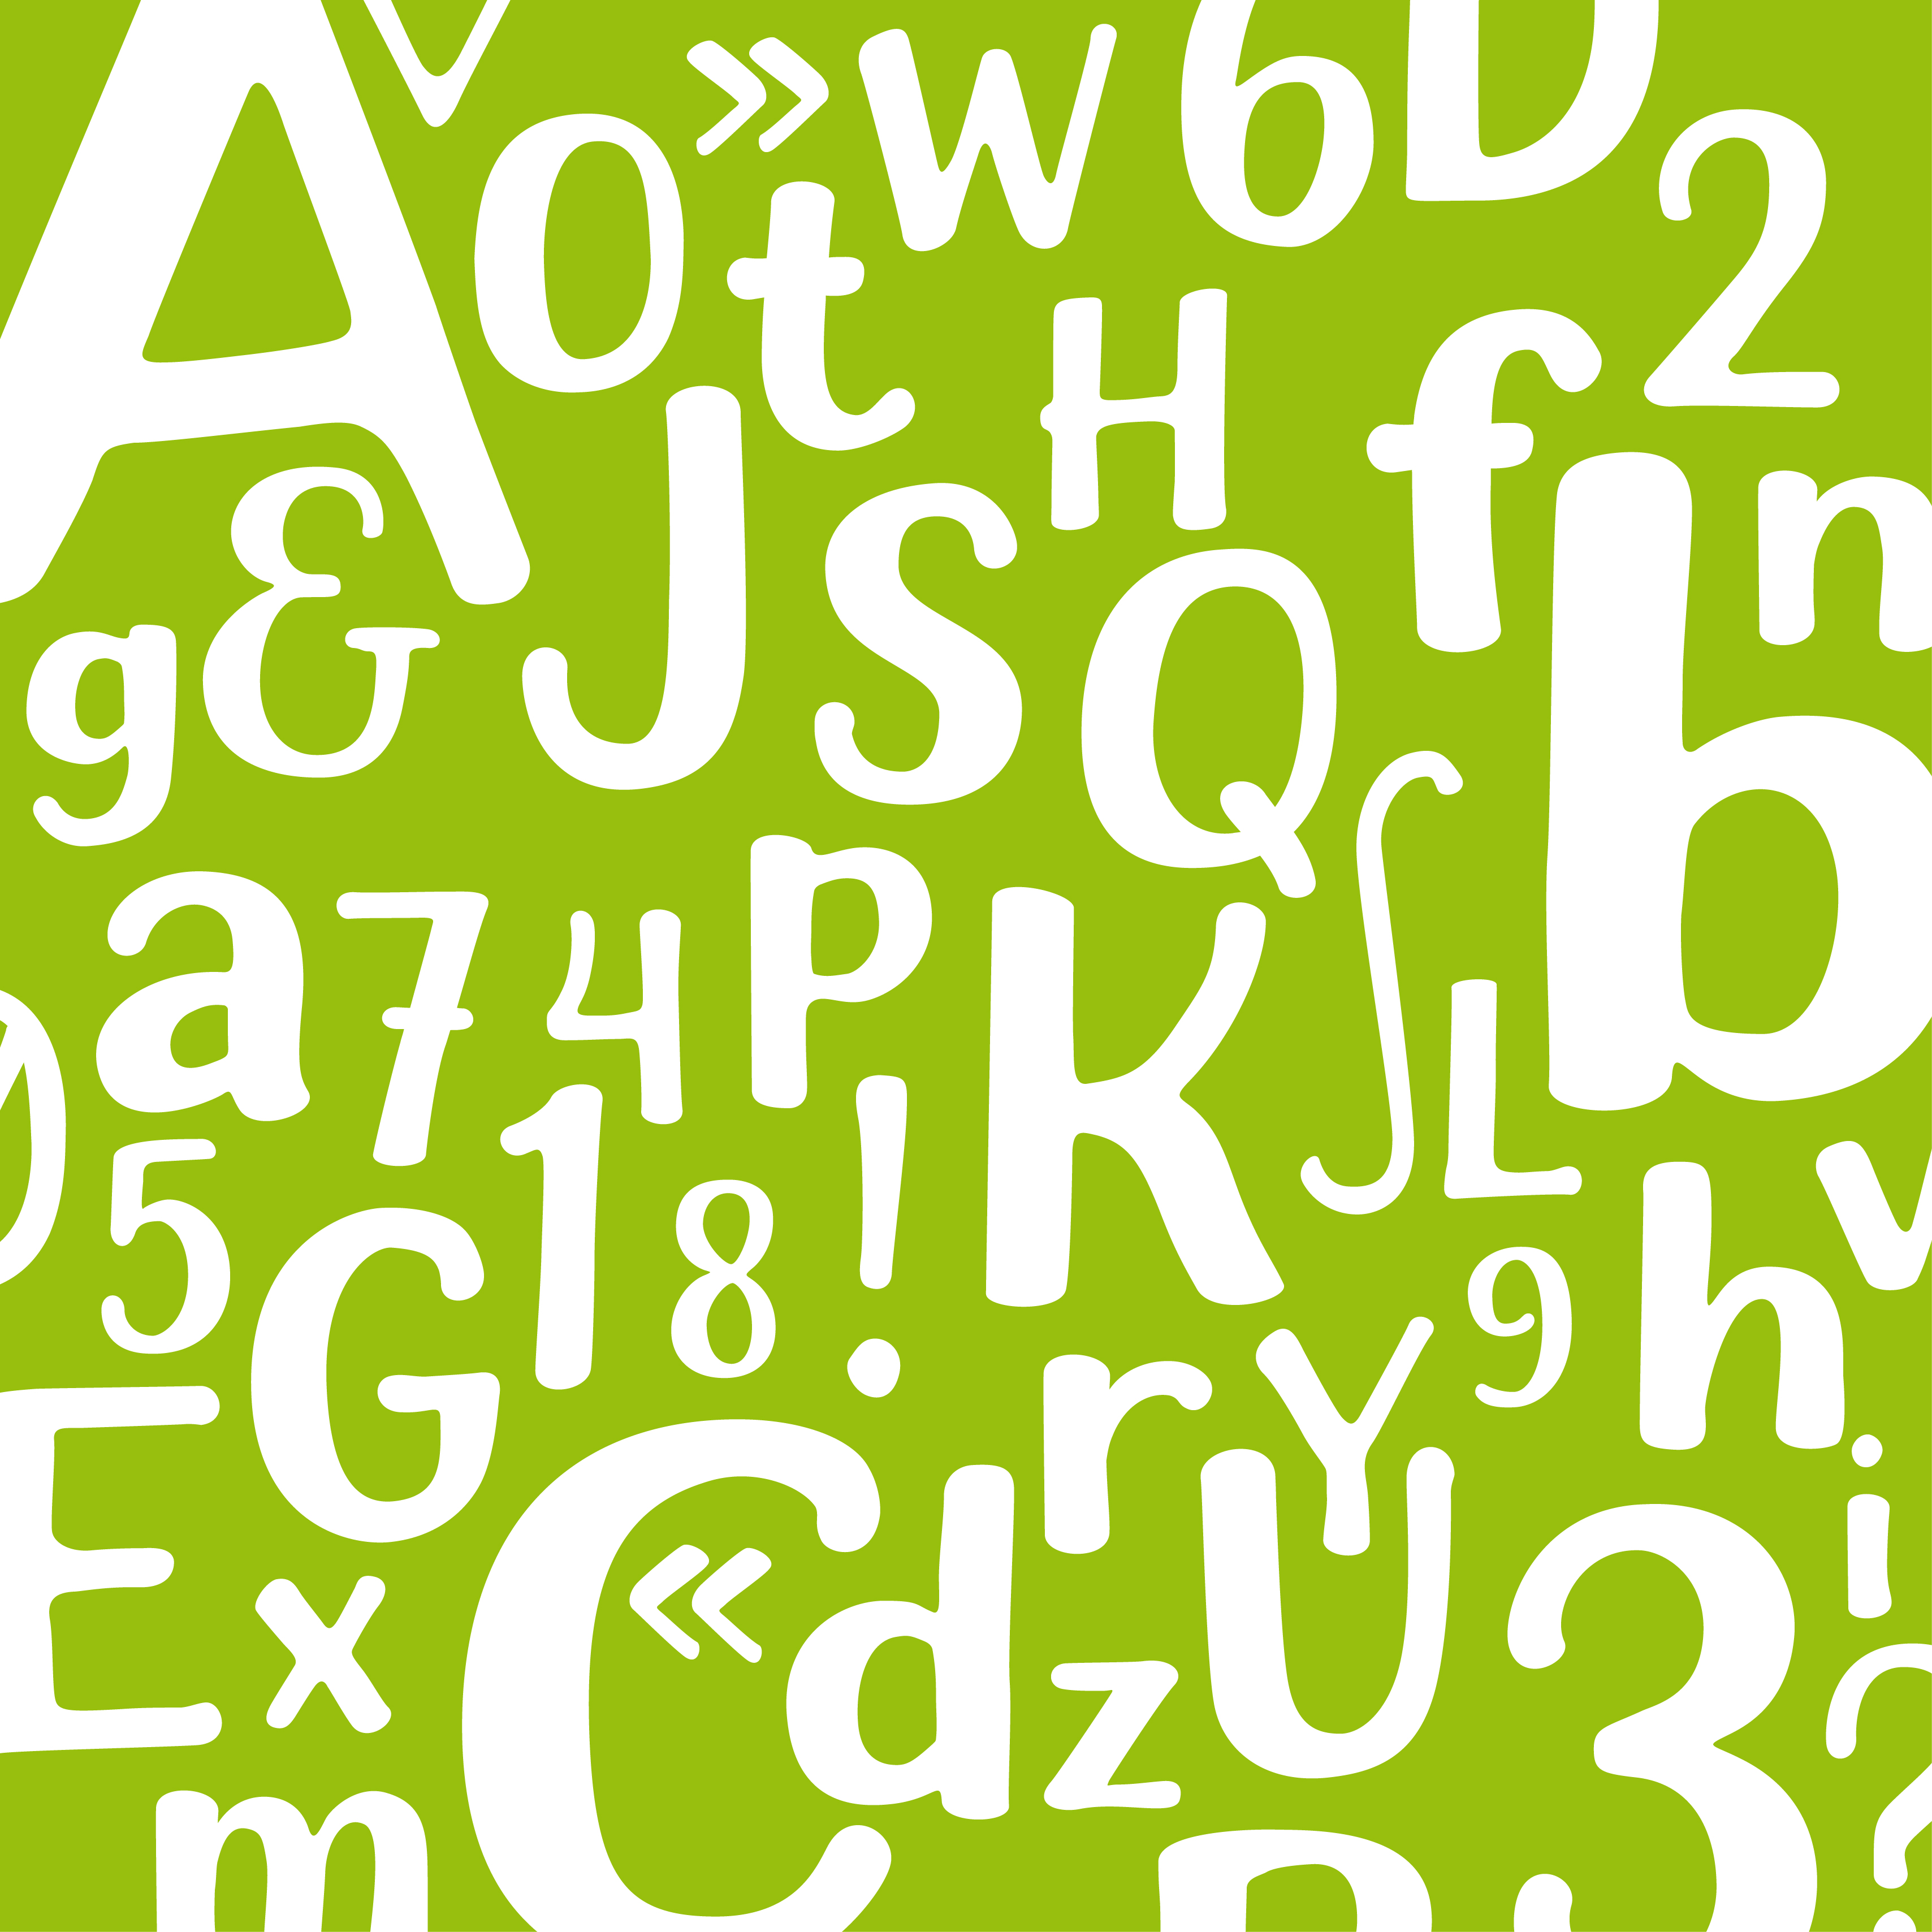 Typographie Bergerie Export, jeu typographique avec des lettres et des chiffres blancs de différentes tailles sur fond vert